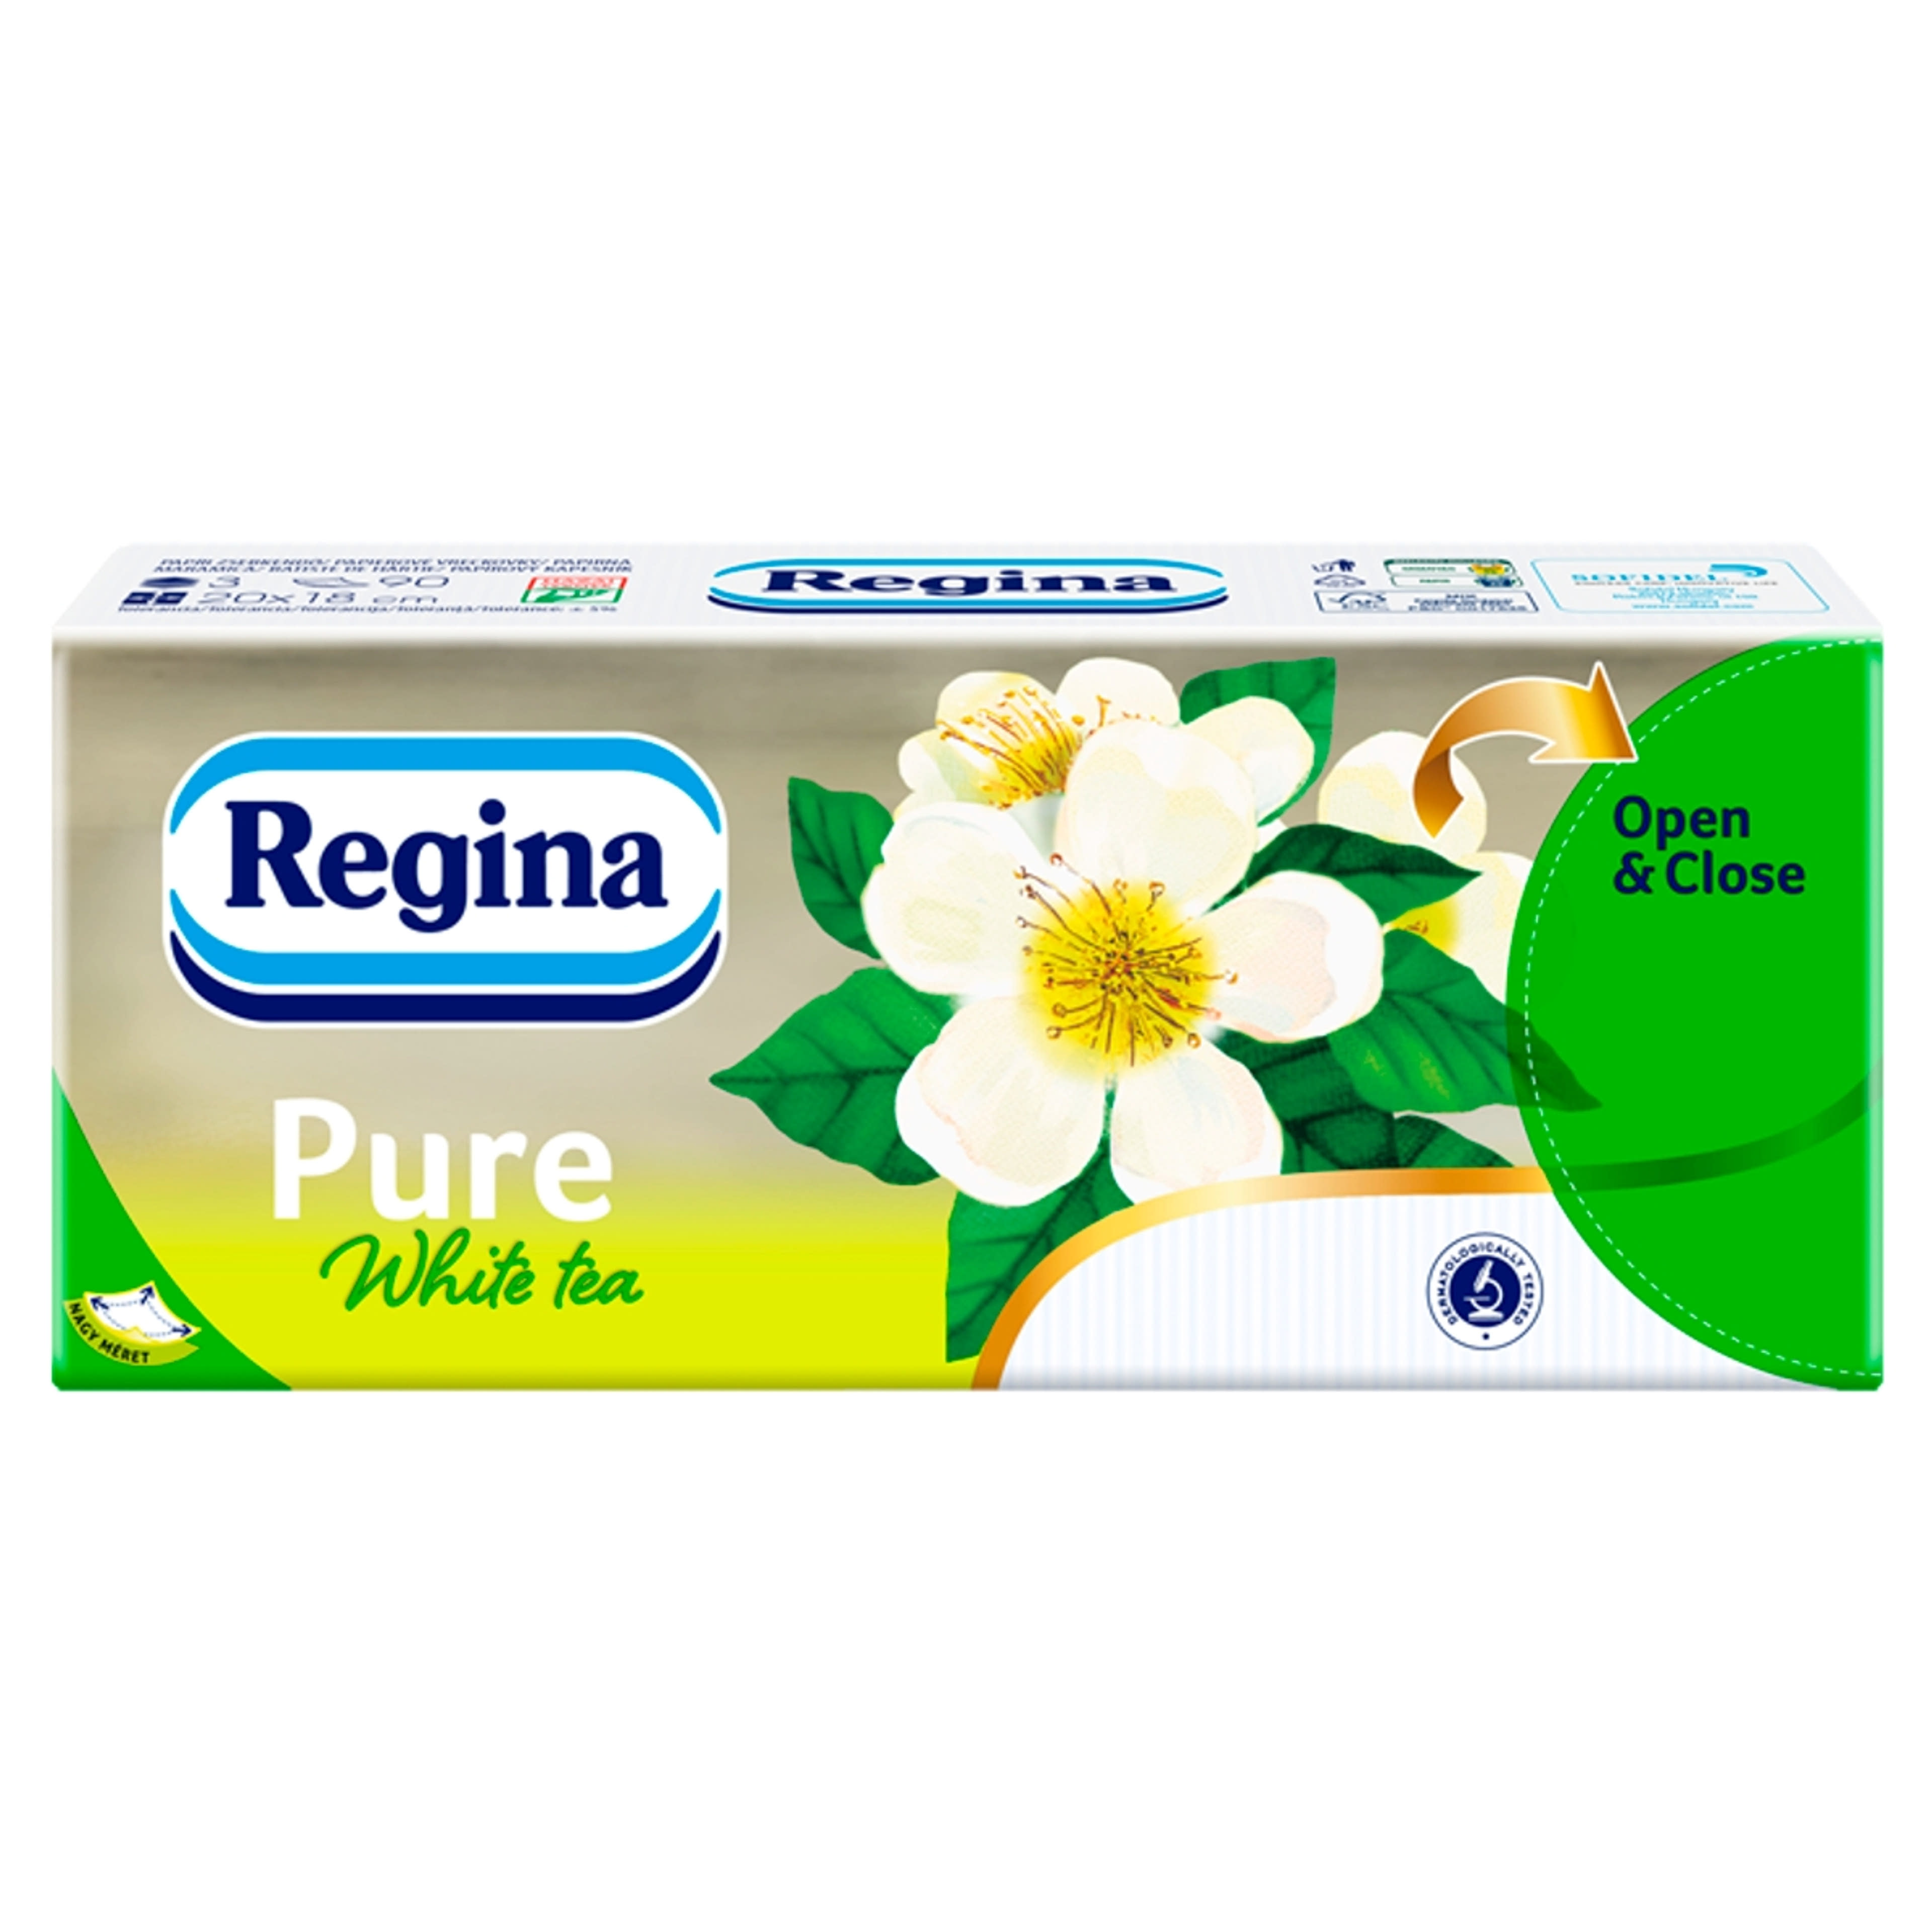 Regina papírzsebkendő pure white tea 3 rétegű - 1 db-4